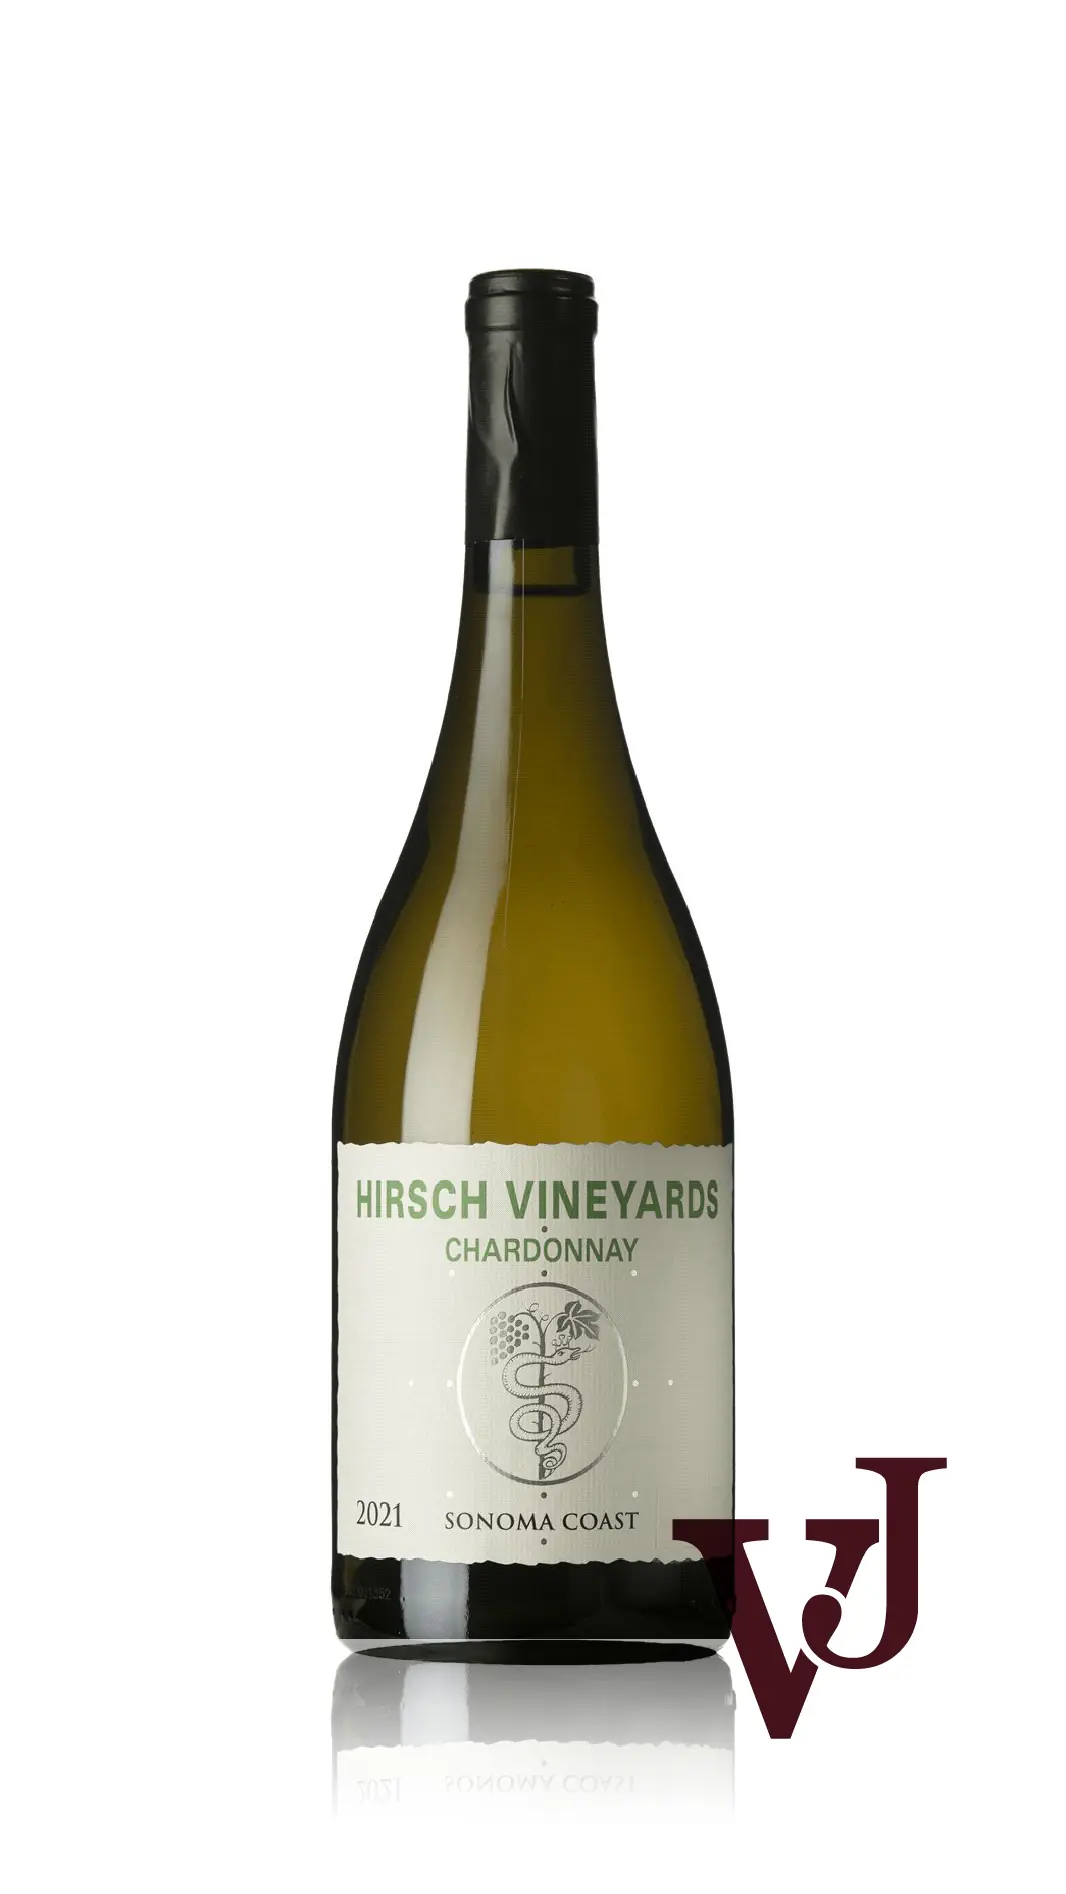 Vitt Vin - Hirsch Vineyards Chardonnay 2021 artikel nummer 9110201 från producenten Hirsch Vineyards från USA - Vinjournalen.se